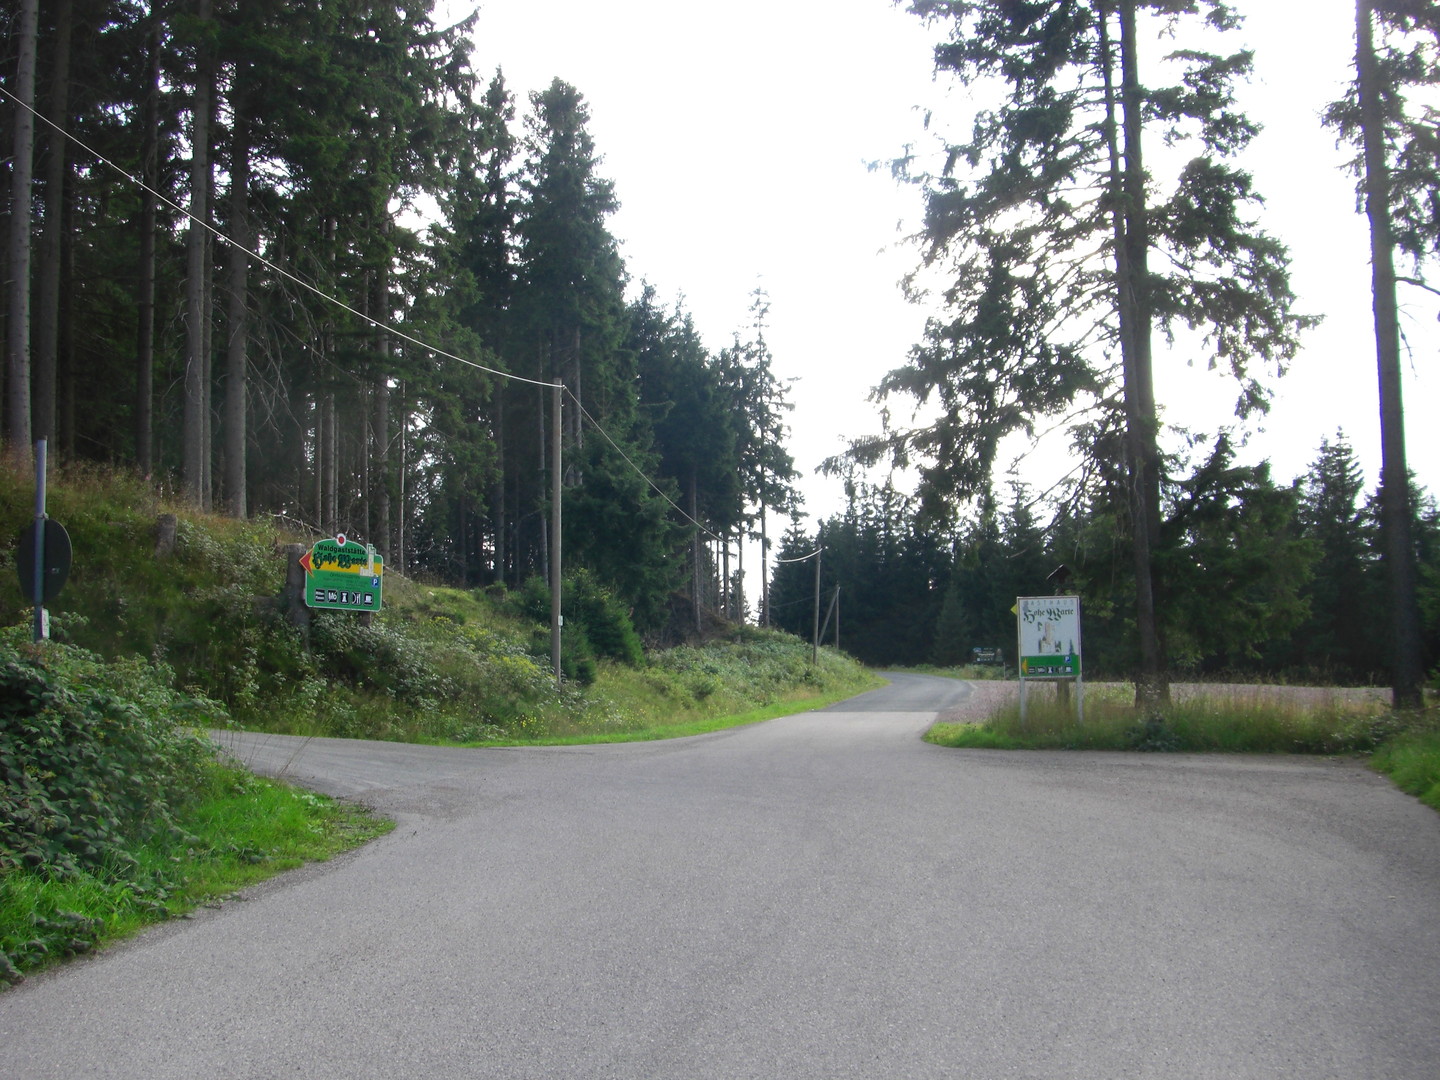 dann gelangt man diese Weggabelung, zur Hohen Warte geht es links weiter, geradeaus gelangt man zur Waldgaststätte Mönchhof.